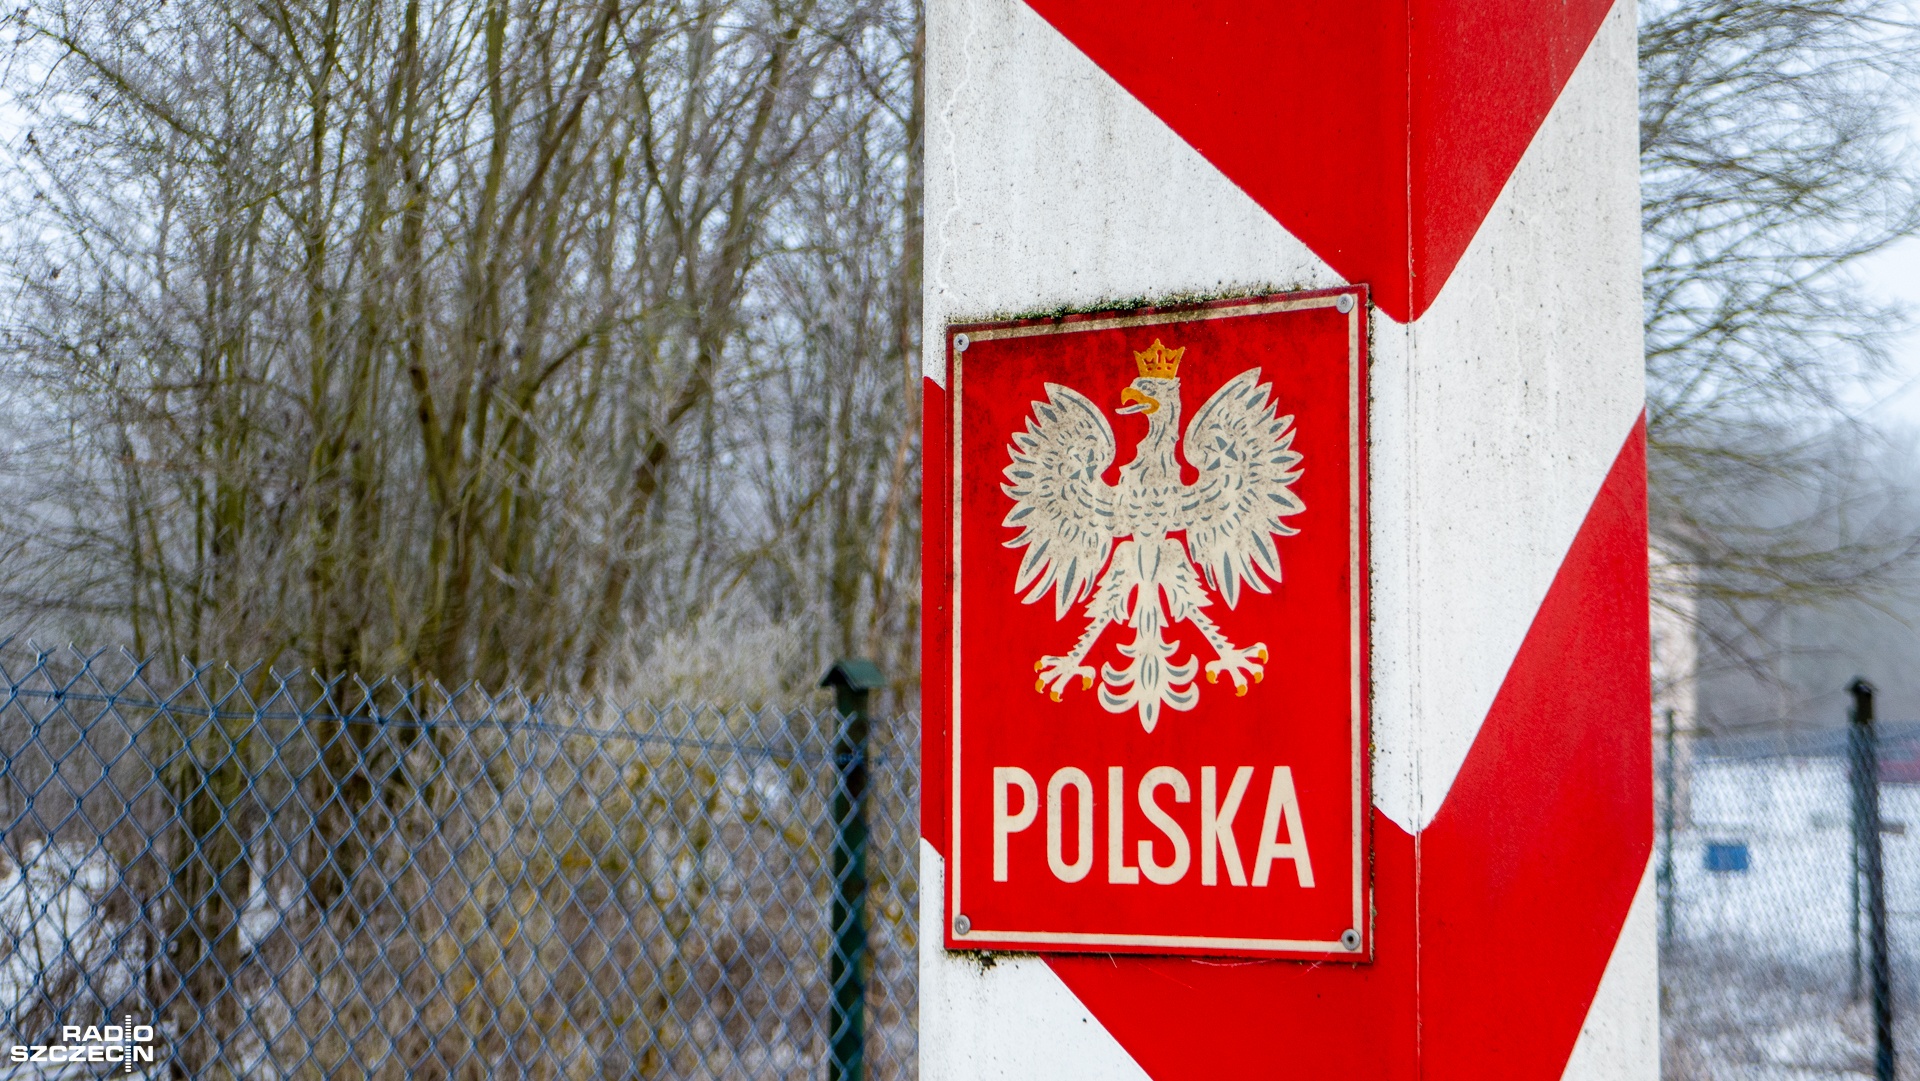 Będą dodatkowe wzmocnienia i fortyfikacje na wschodniej i północno-wschodniej granicy Polski. Rząd ogłosi założenia programu Tarcza Wschód.